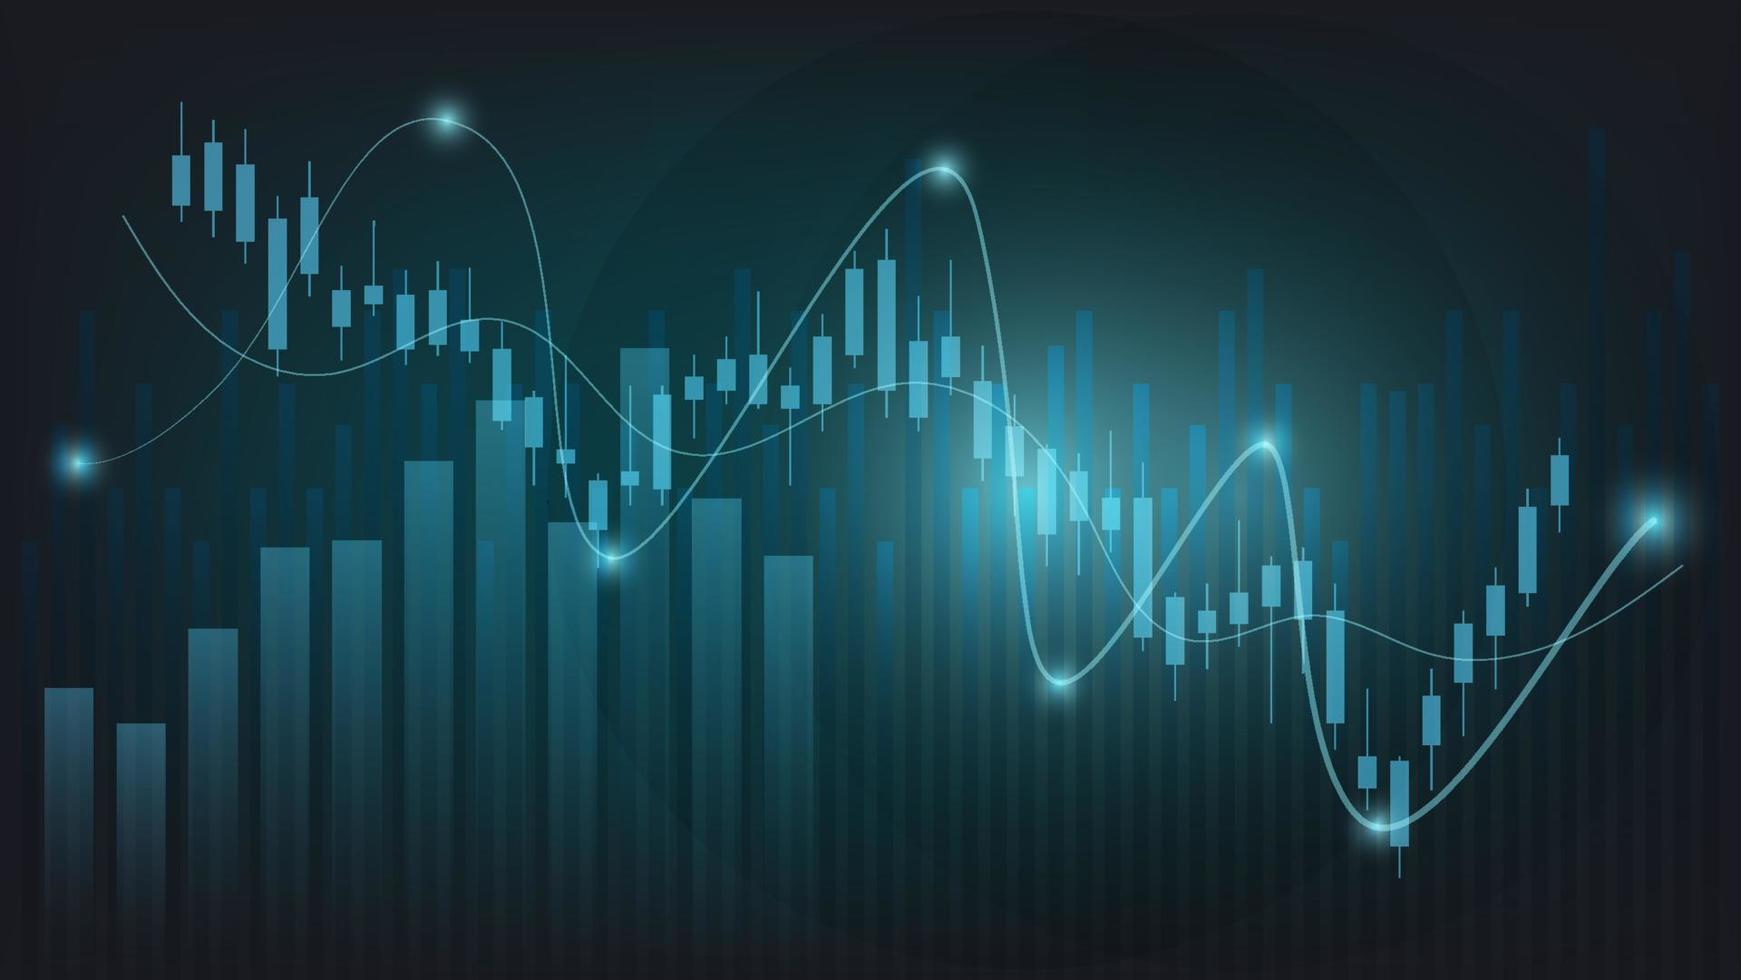 estatísticas de negócios financeiros com gráfico de barras e gráfico de velas mostram o preço do mercado de ações e câmbio em fundo verde escuro vetor